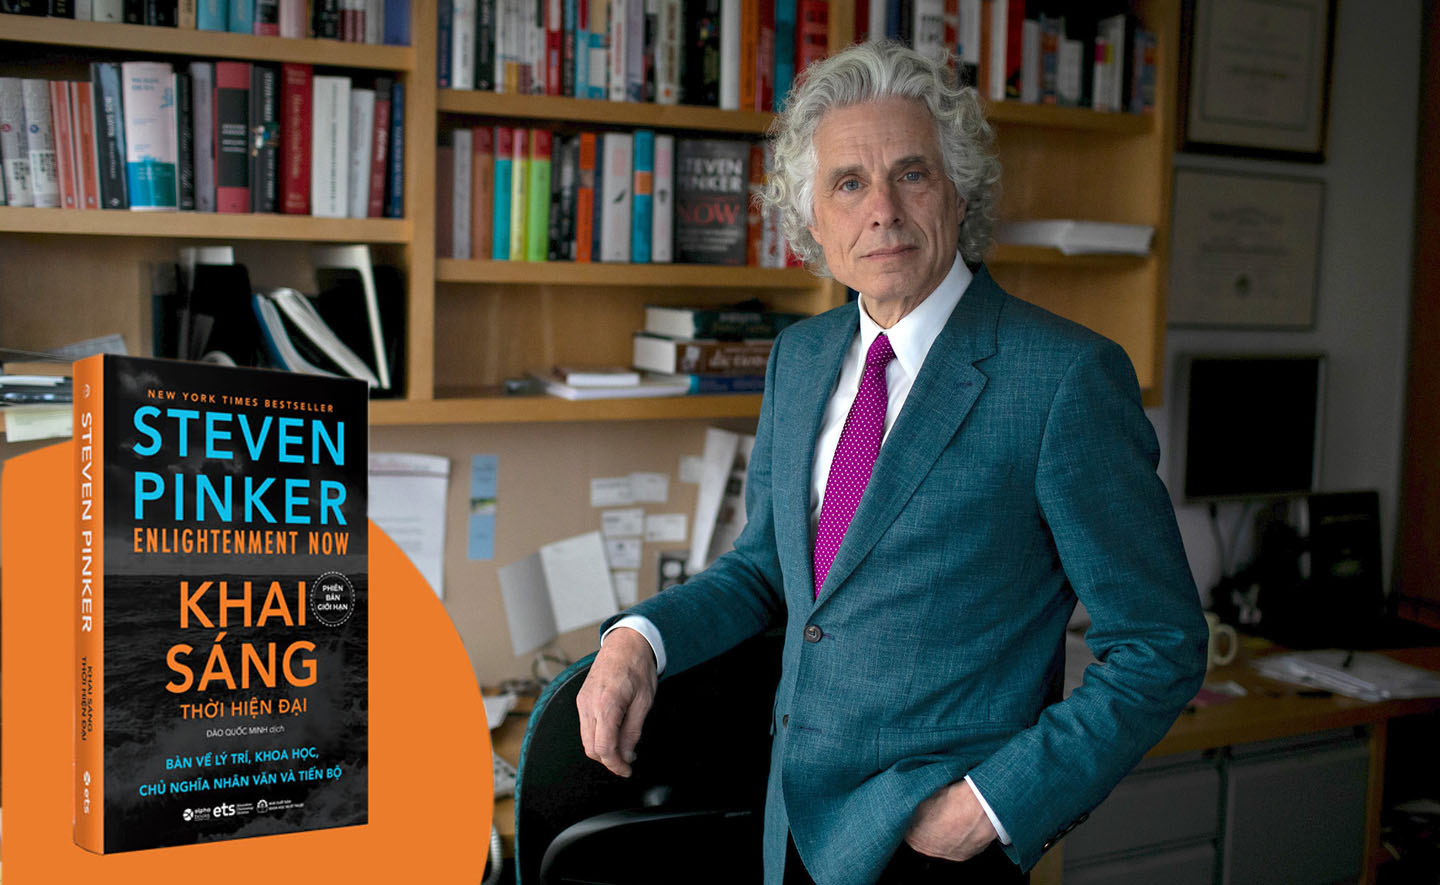 Tác giả Steven Pinker chia sẻ về “Khai sáng thời hiện đại”